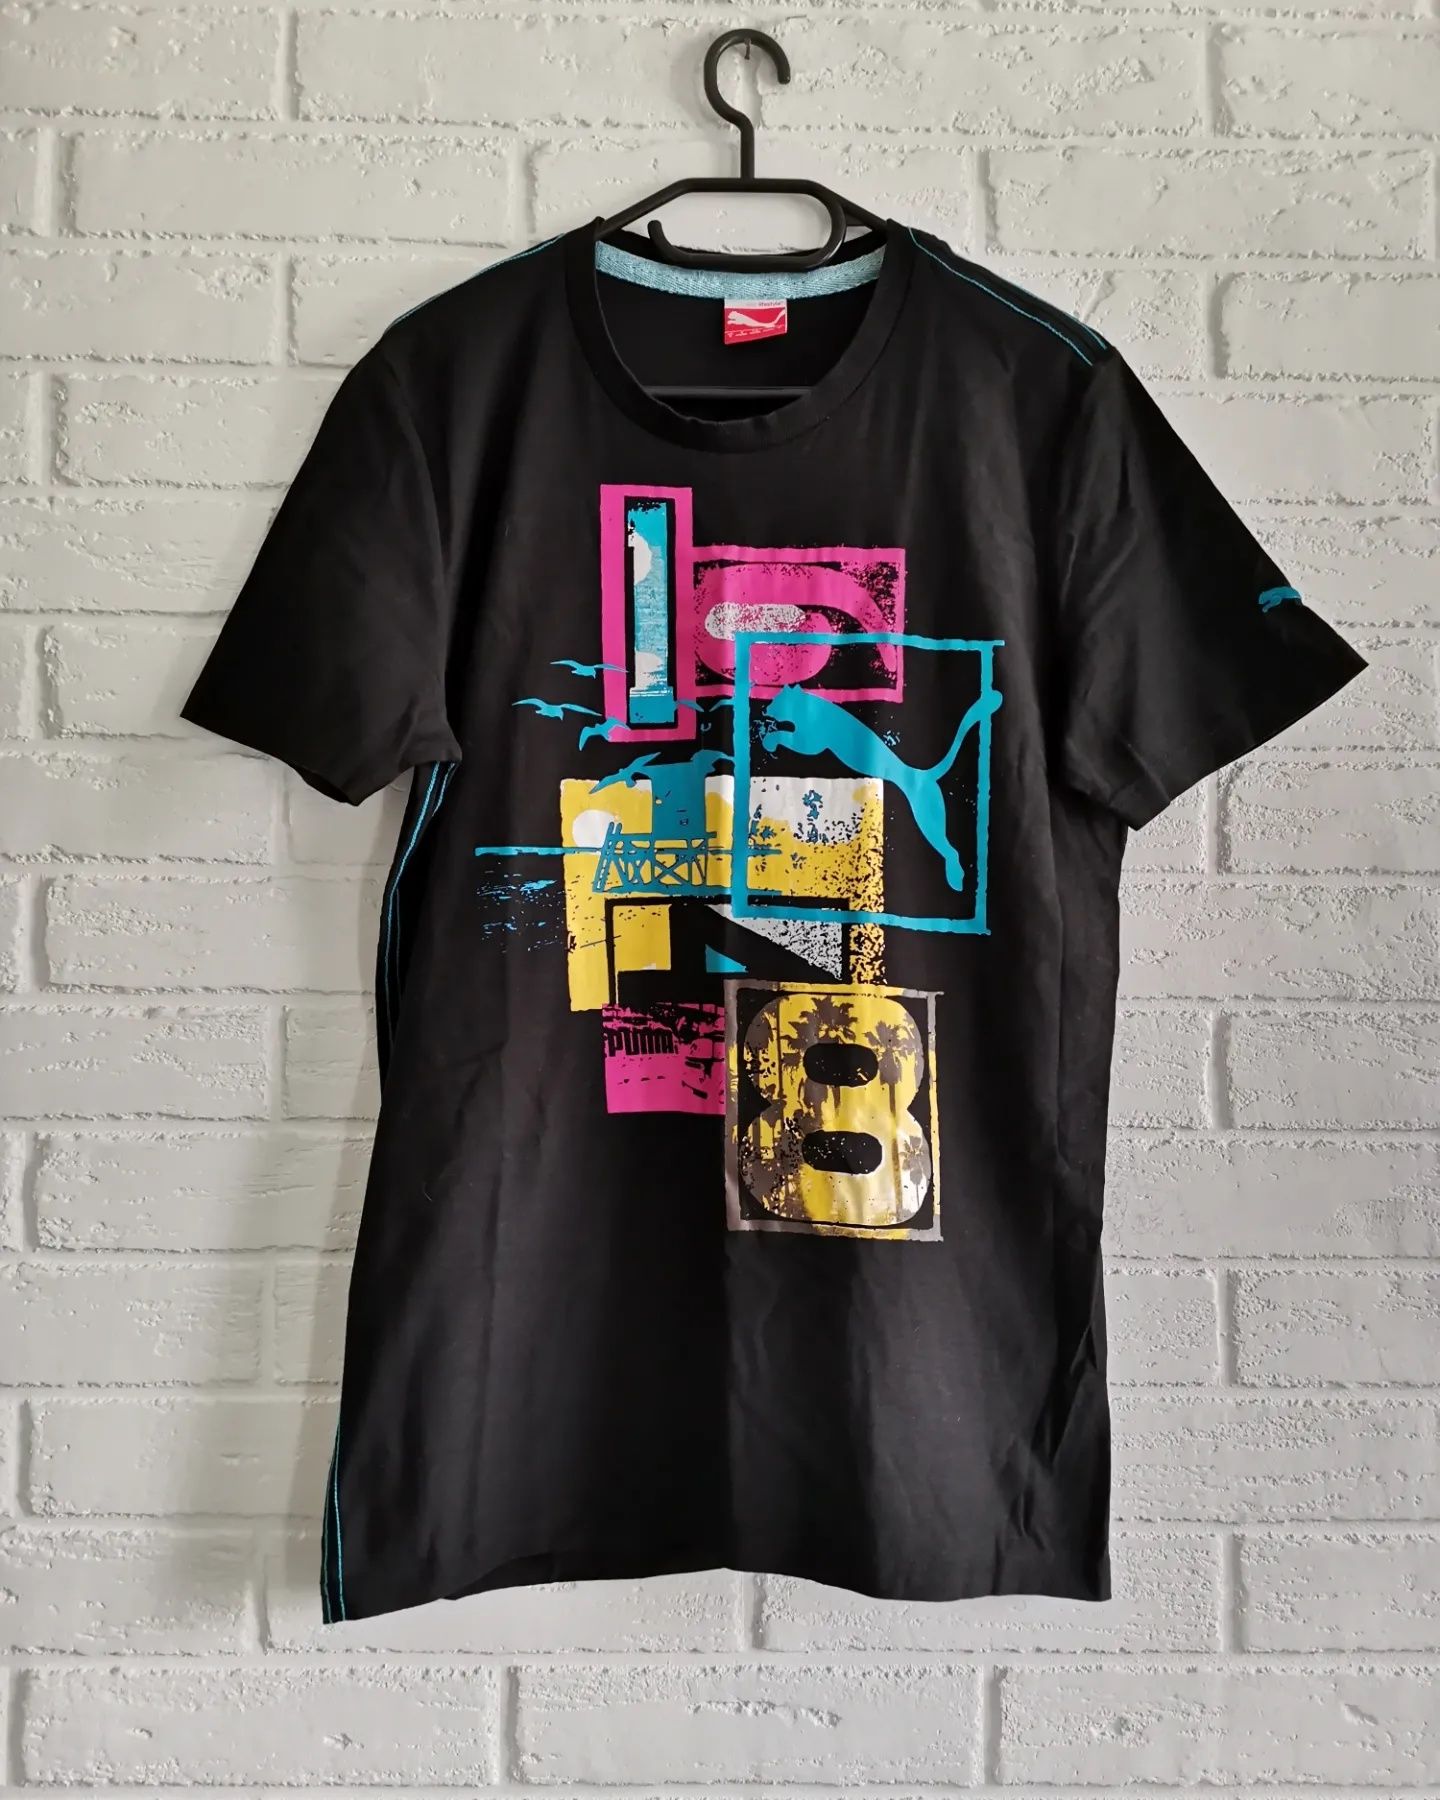 Мъжка тениска PUMA/S, Antony Morato/S, DIESEL